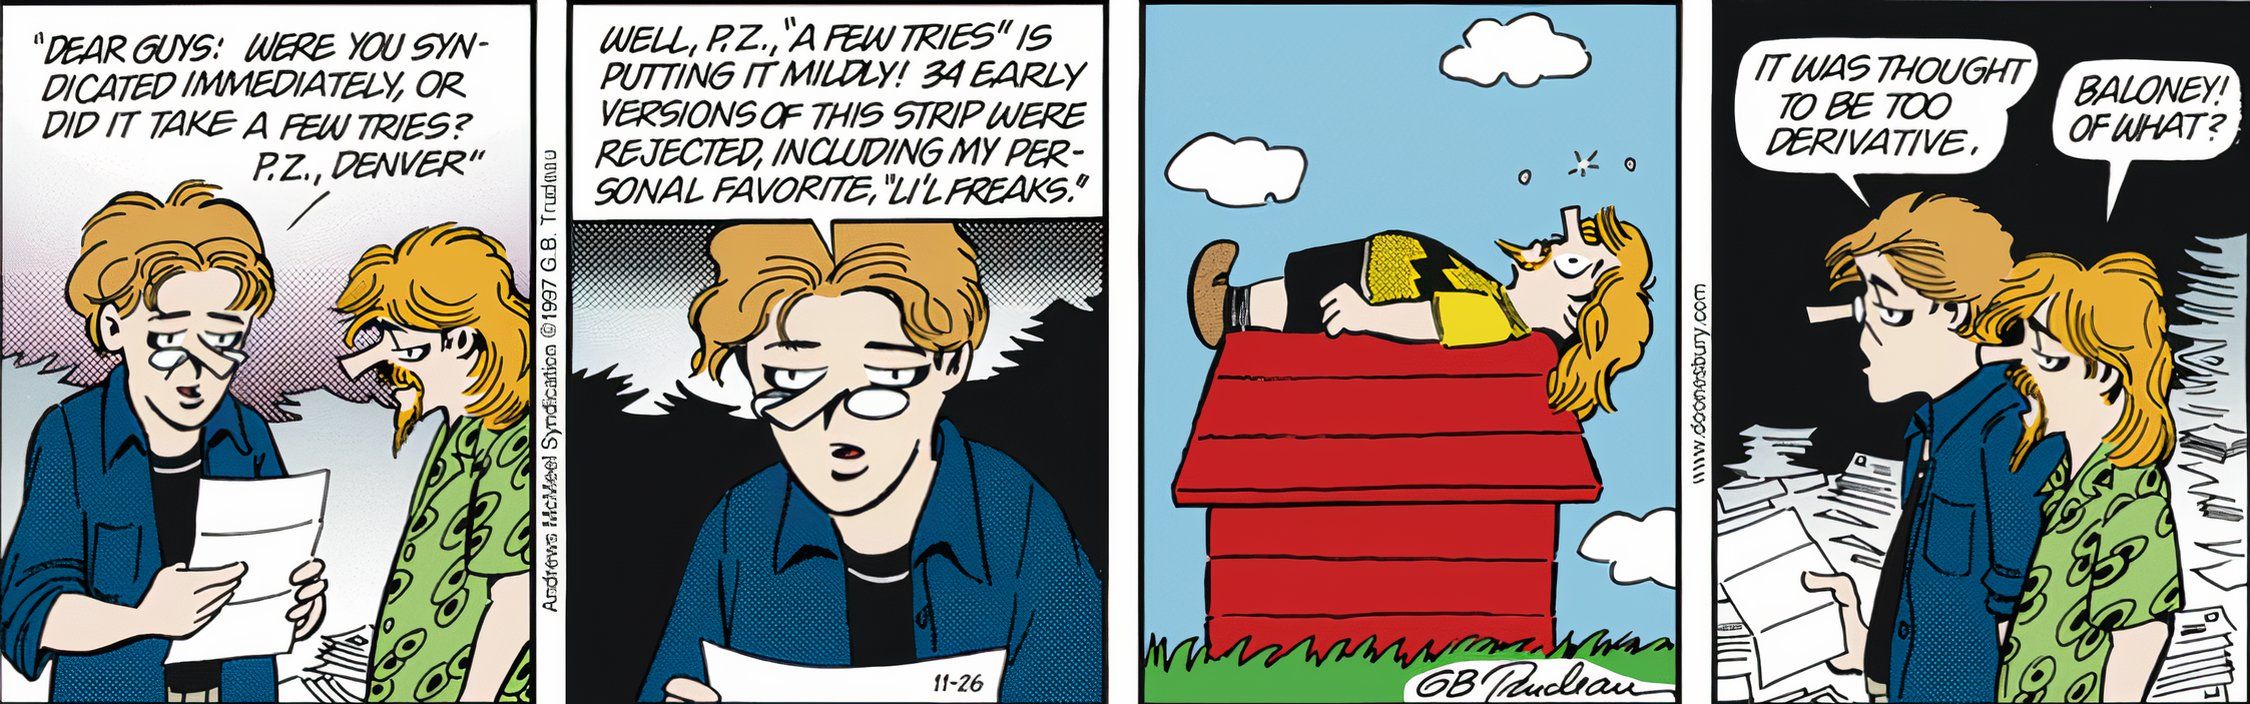 Referensi Peanuts karya Mike Doonesbury;  Zonker Harris ditampilkan berpakaian seperti Charlie Brown berbaring di rumah anjing Snoopy.